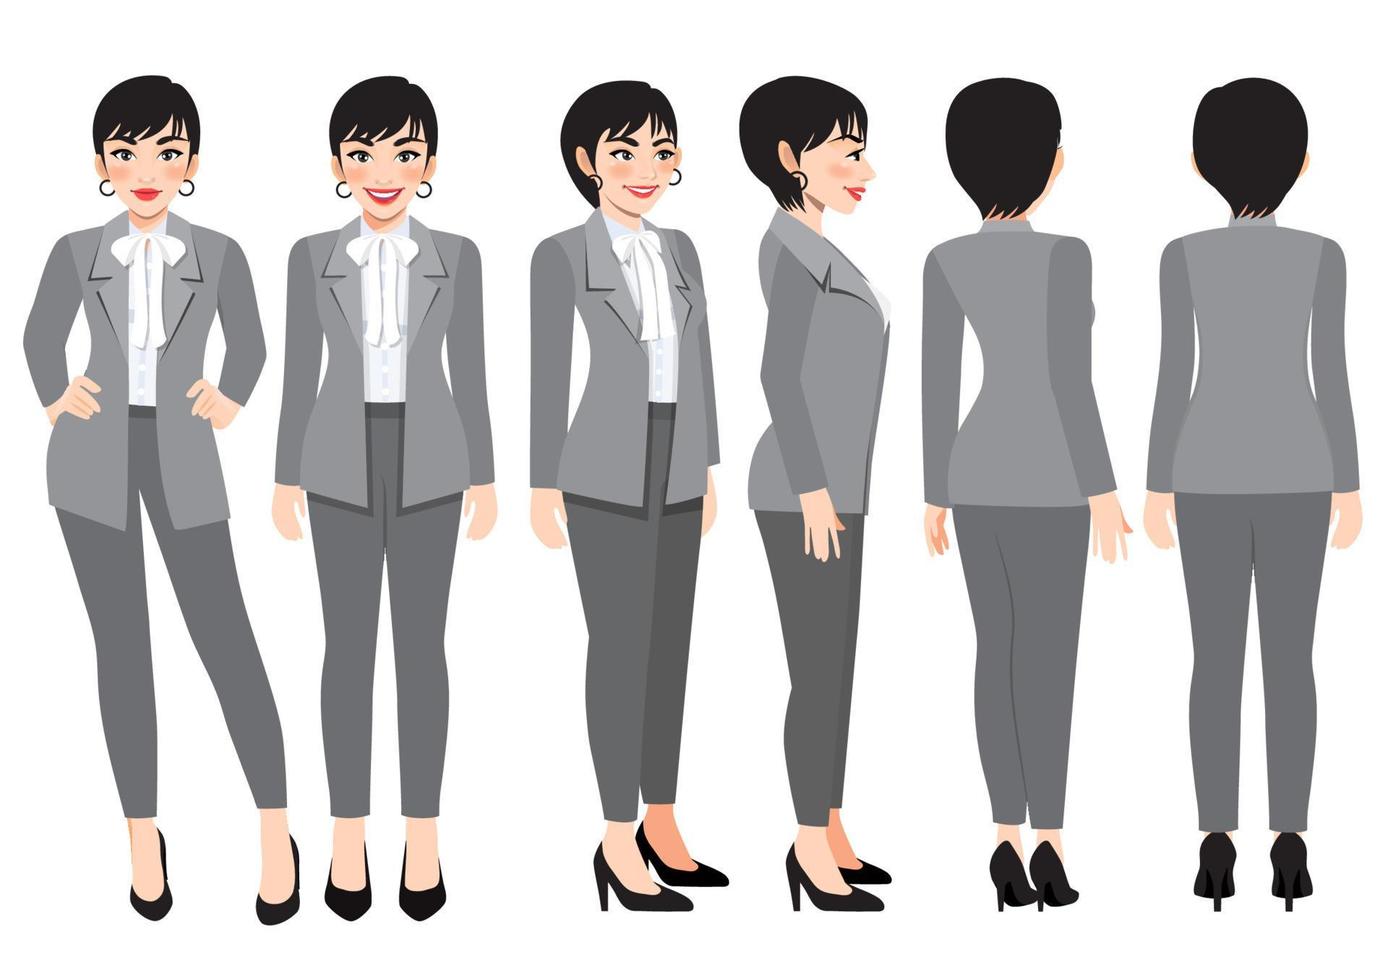 personnage de dessin animé avec une femme d'affaires en costume intelligent gris pour l'animation. avant, côté, arrière, personnage de vue 3-4. illustration vectorielle plane vecteur